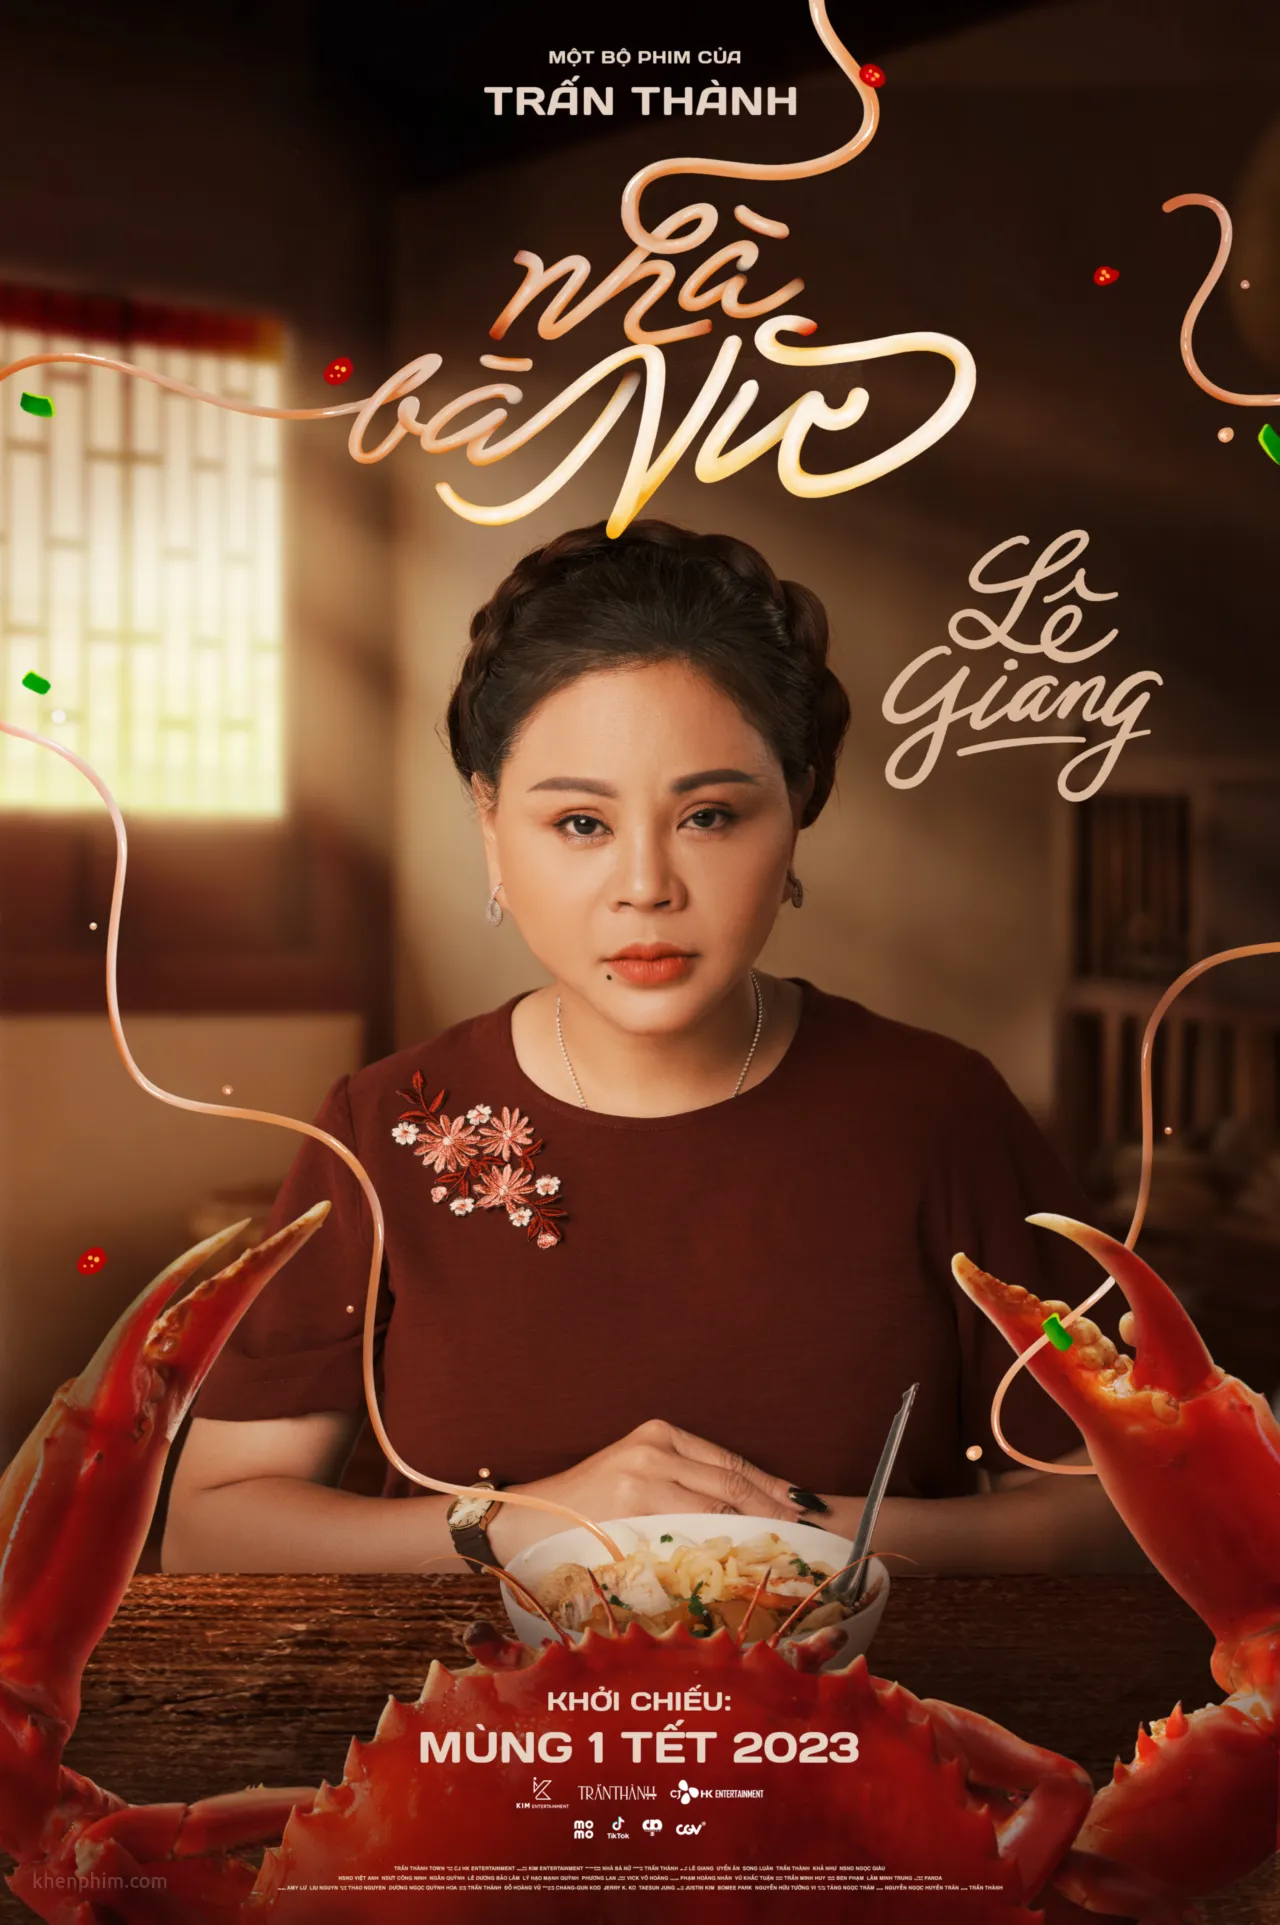 Bà Nữ - nhân vật chính của phim, do Lê Giang vào vai.